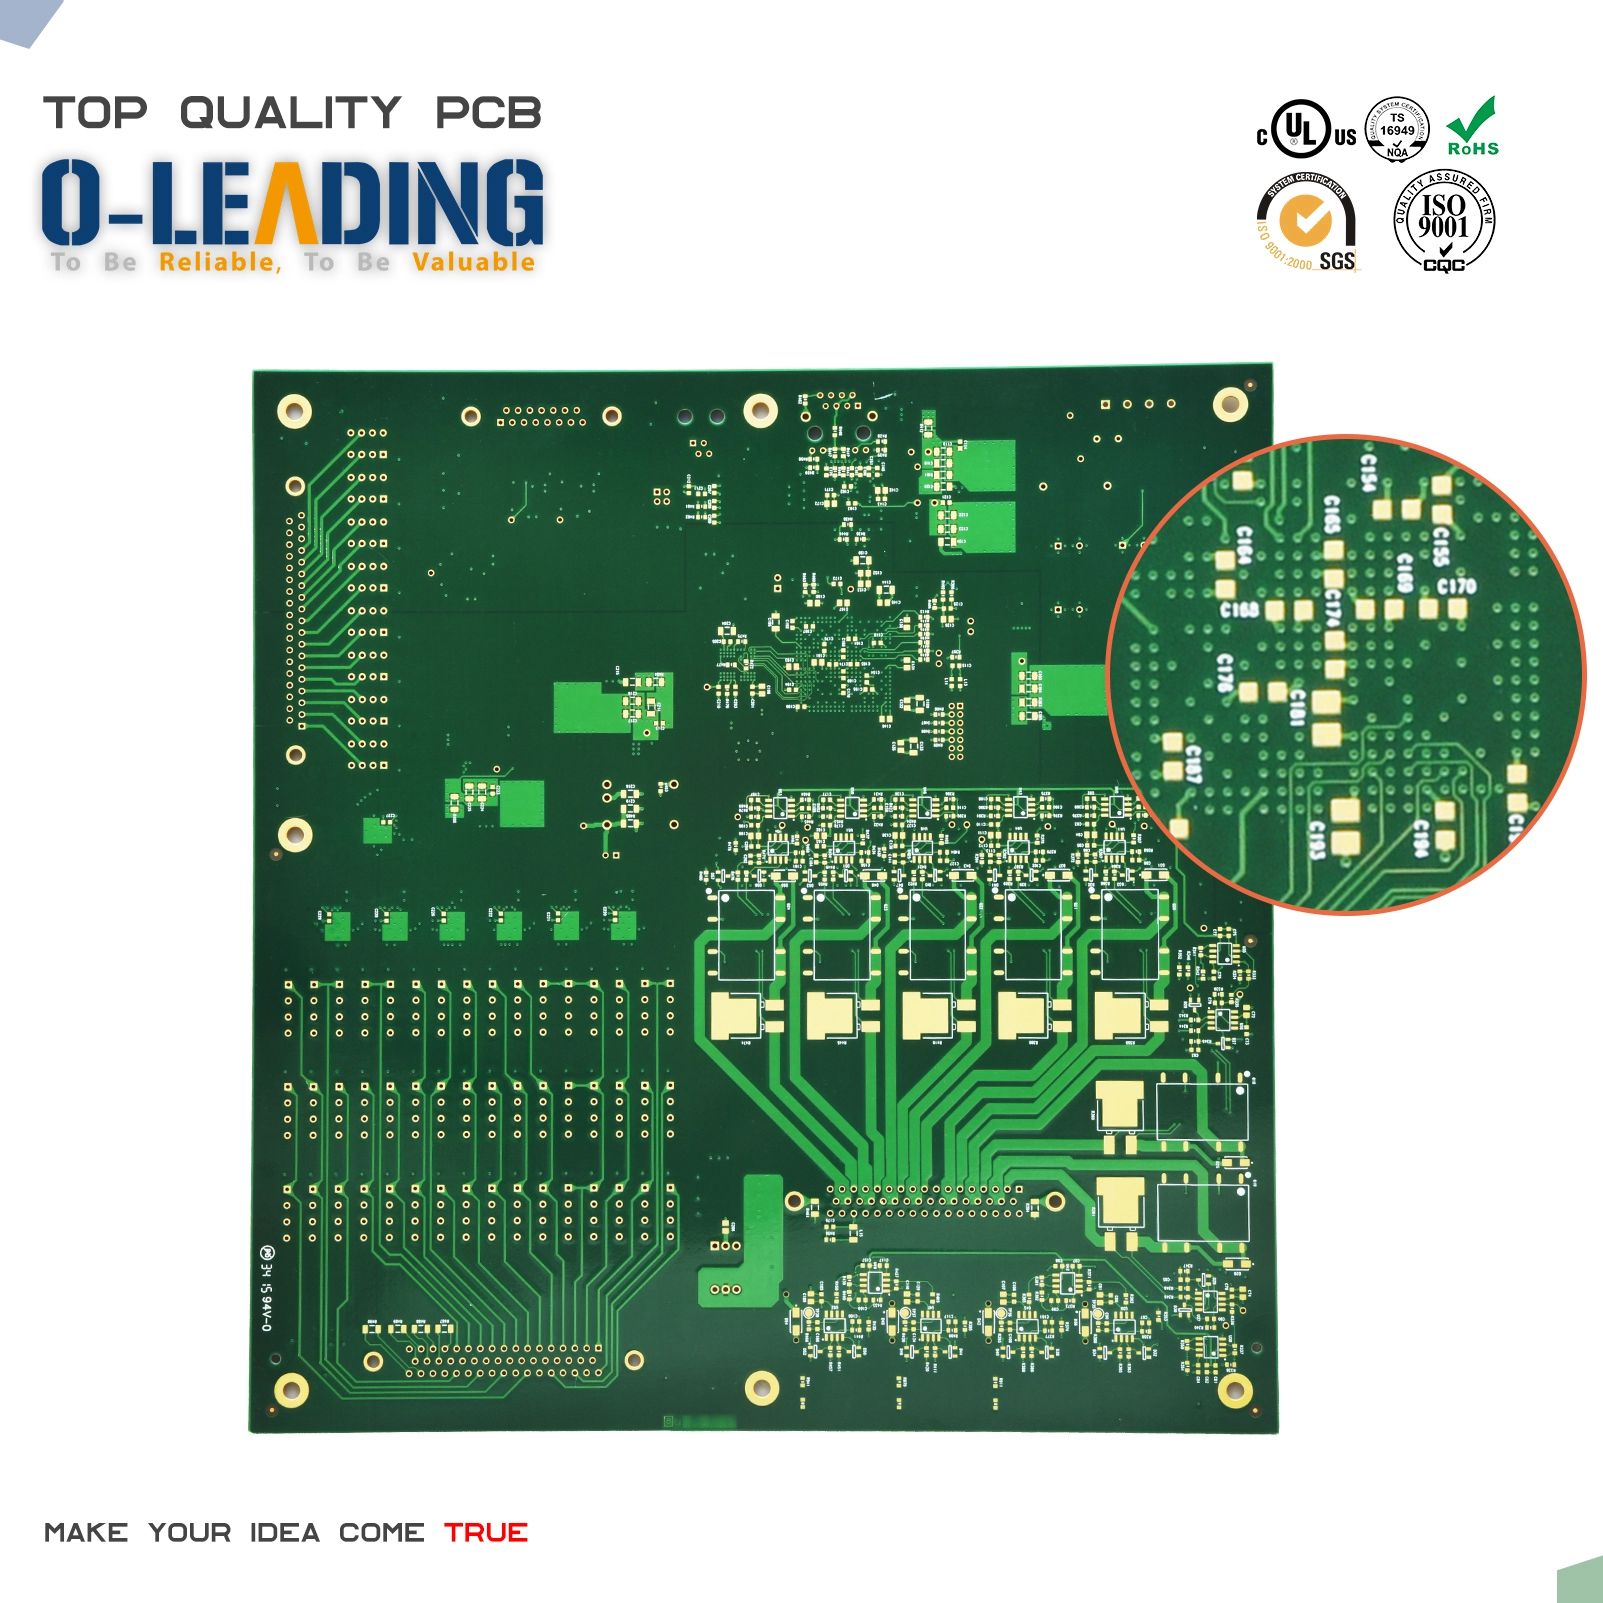 Čína High TG PCB dodavatel, přizpůsobení HDI PCB plošných spojů výrobce